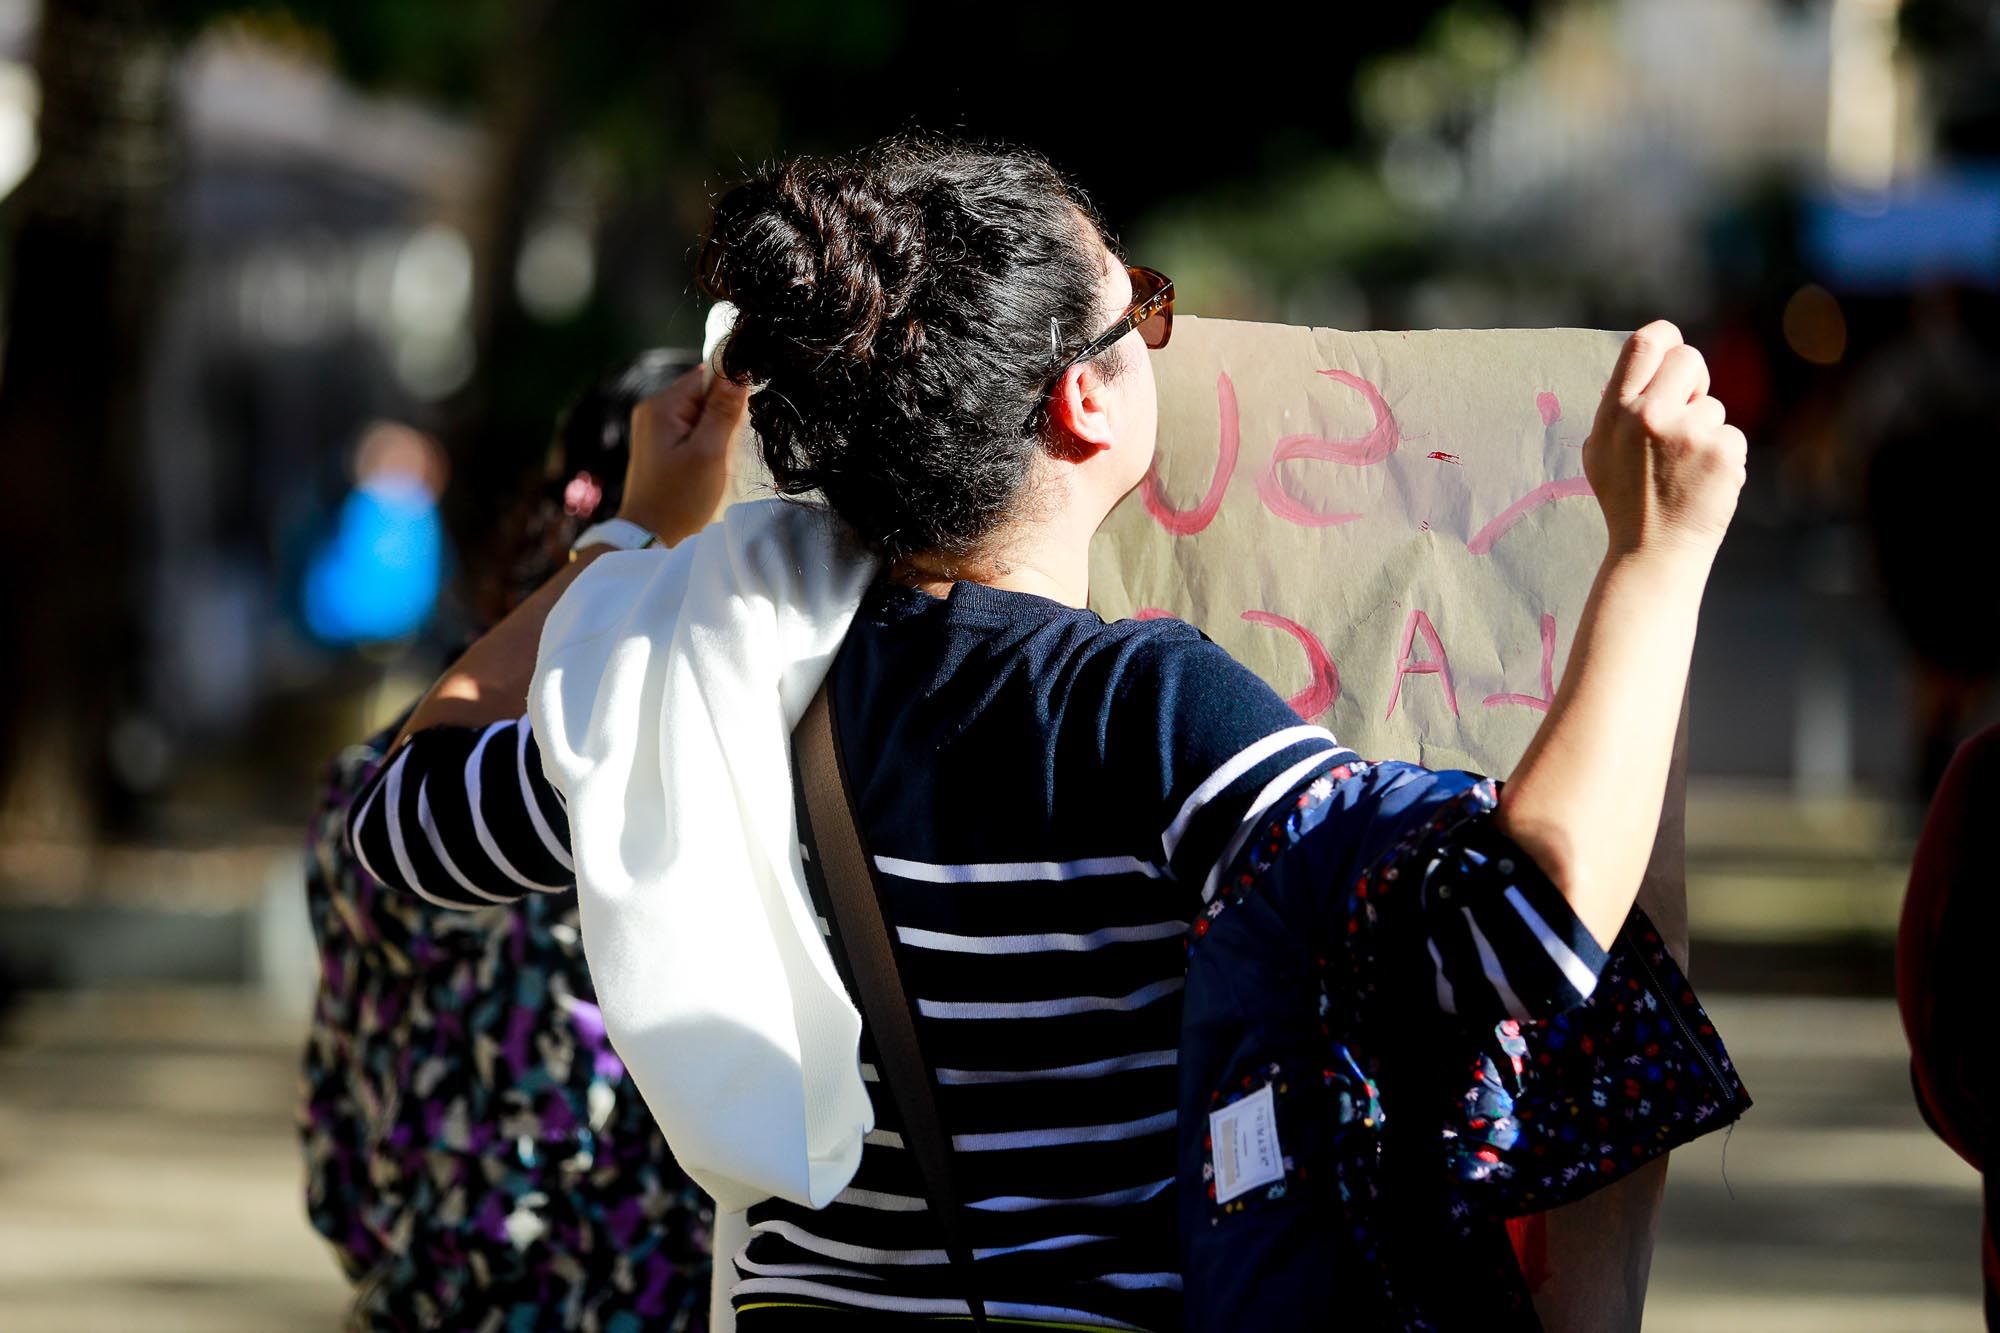 Protesta en Ibiza para que bajen los precios de los alimentos